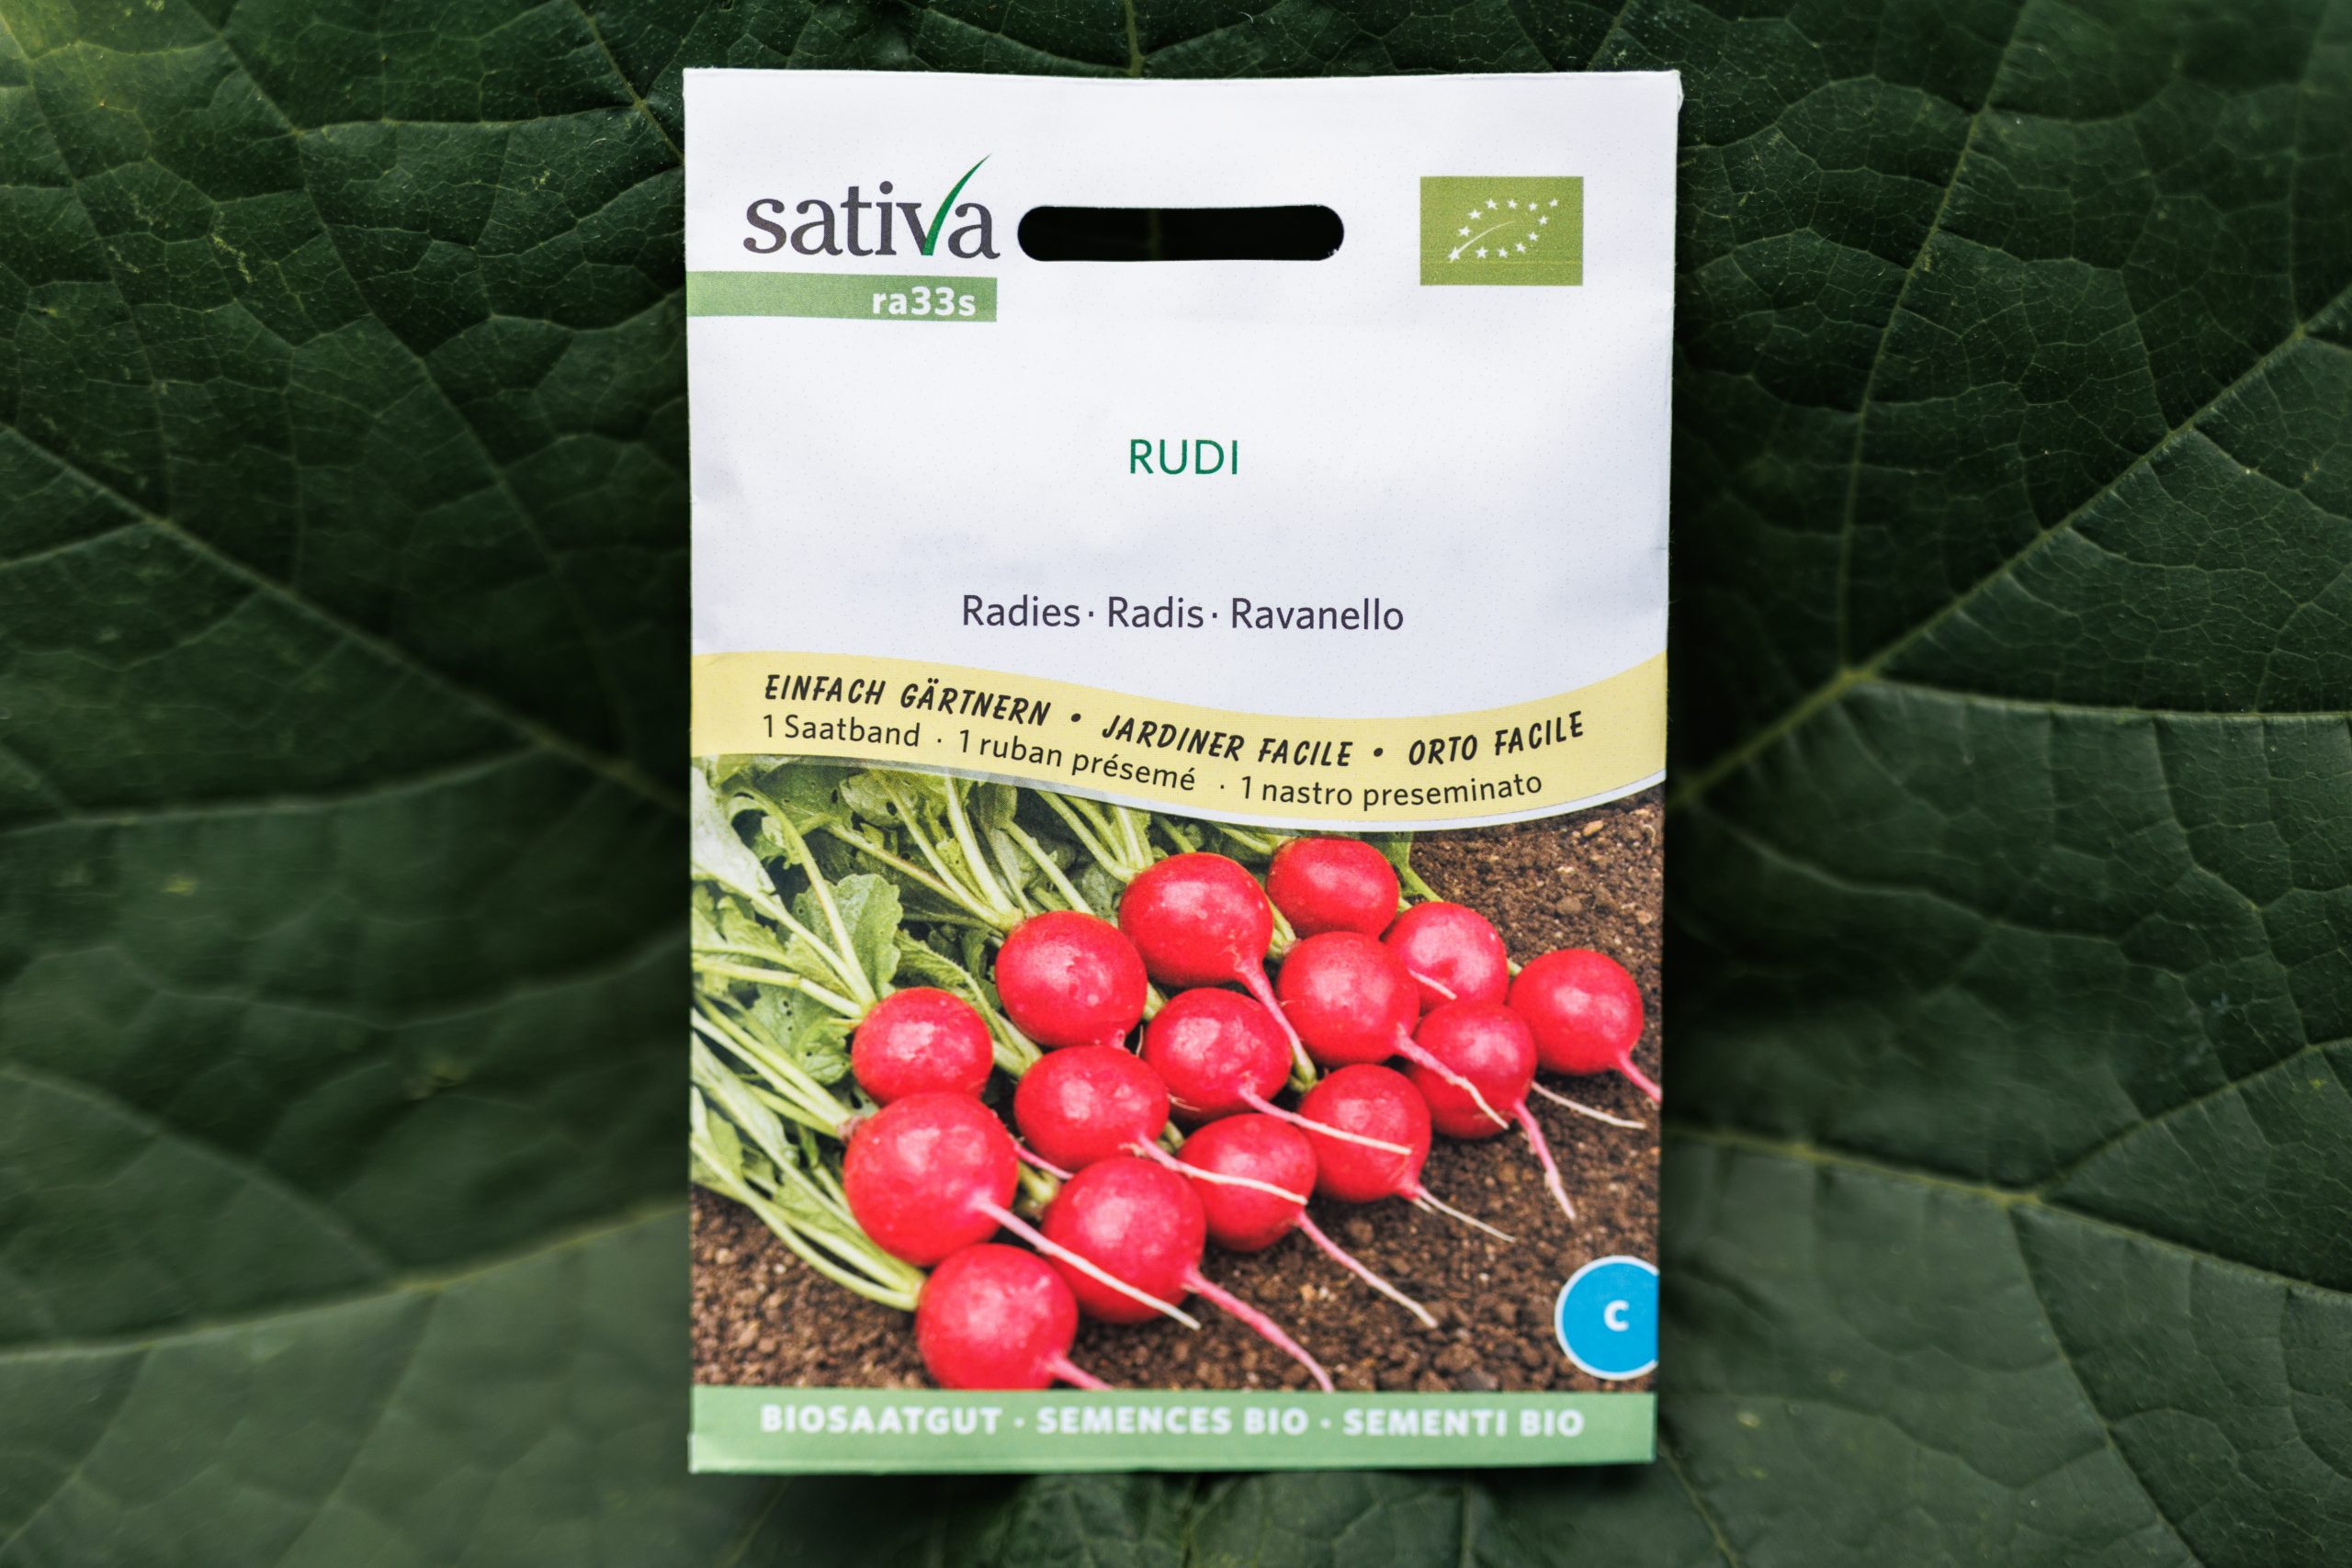 Sativa Biosaatgut - Radies Rudi